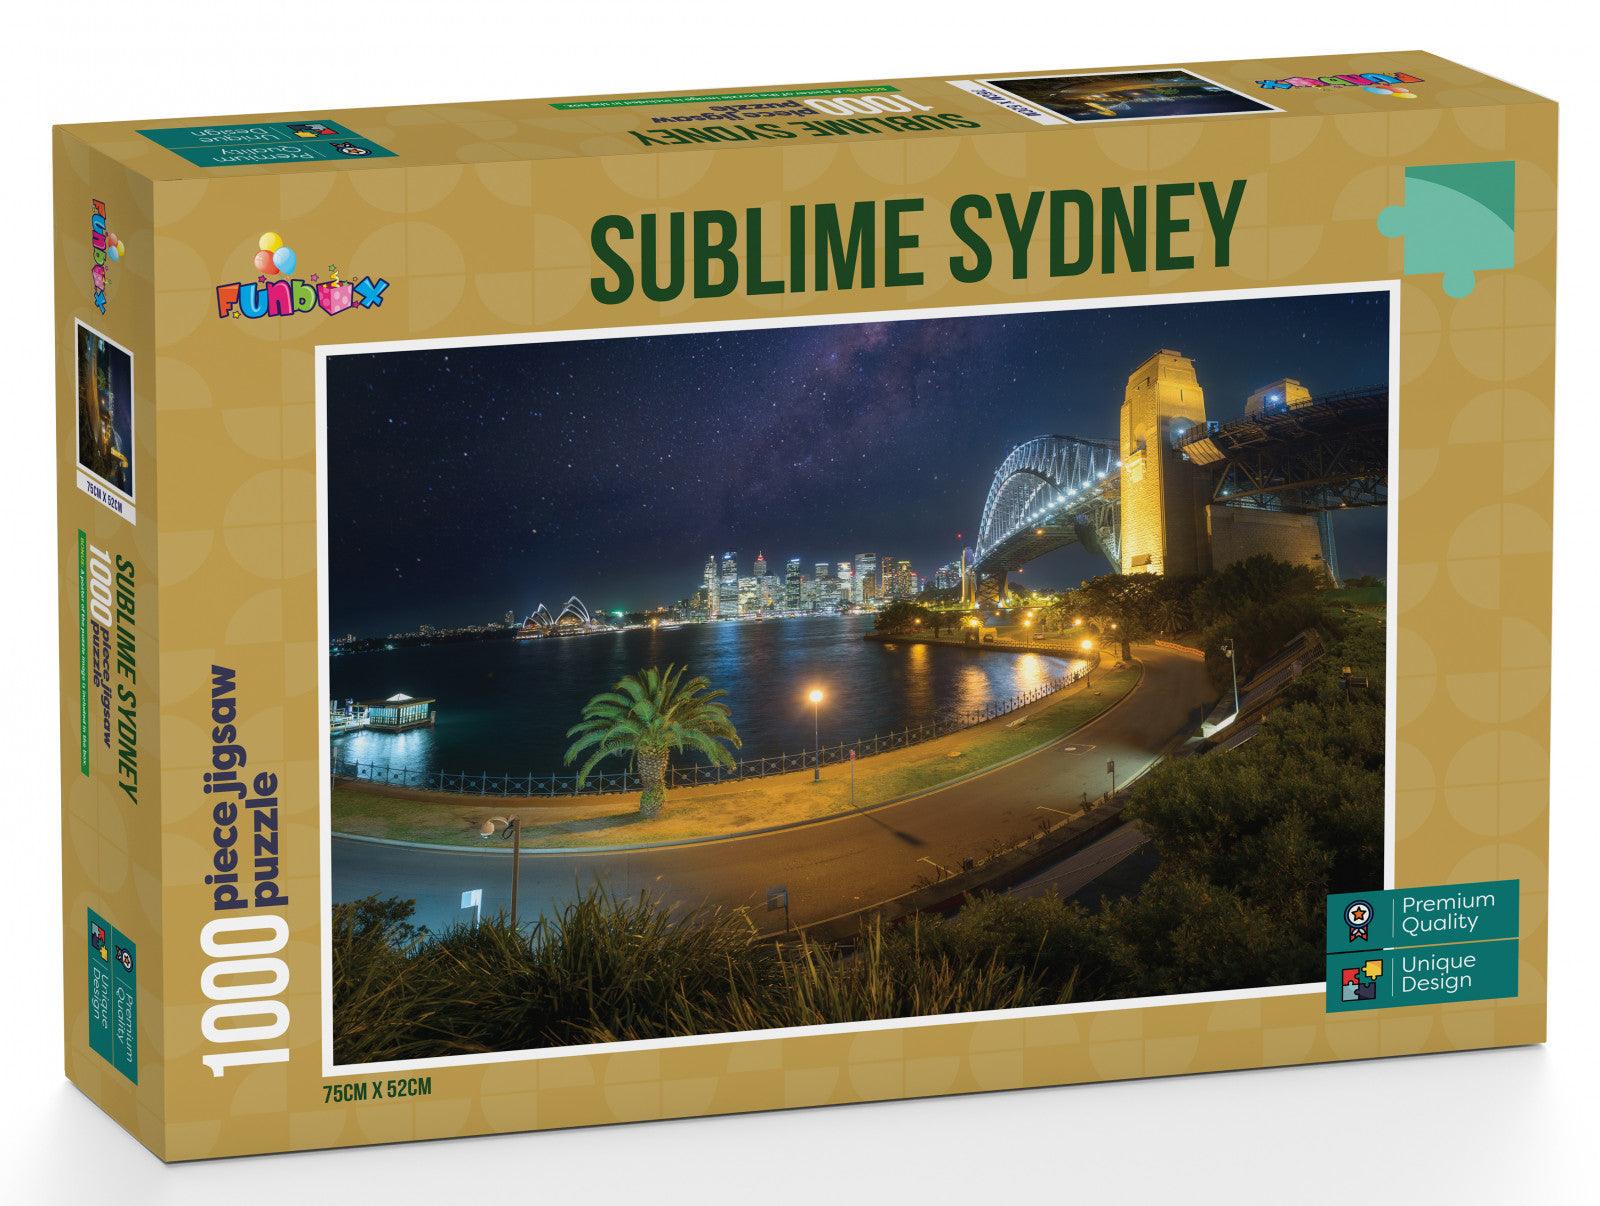 VR-84540 Funbox Puzzle Sublime Sydney Puzzle 1,000 pieces - Funbox - Titan Pop Culture